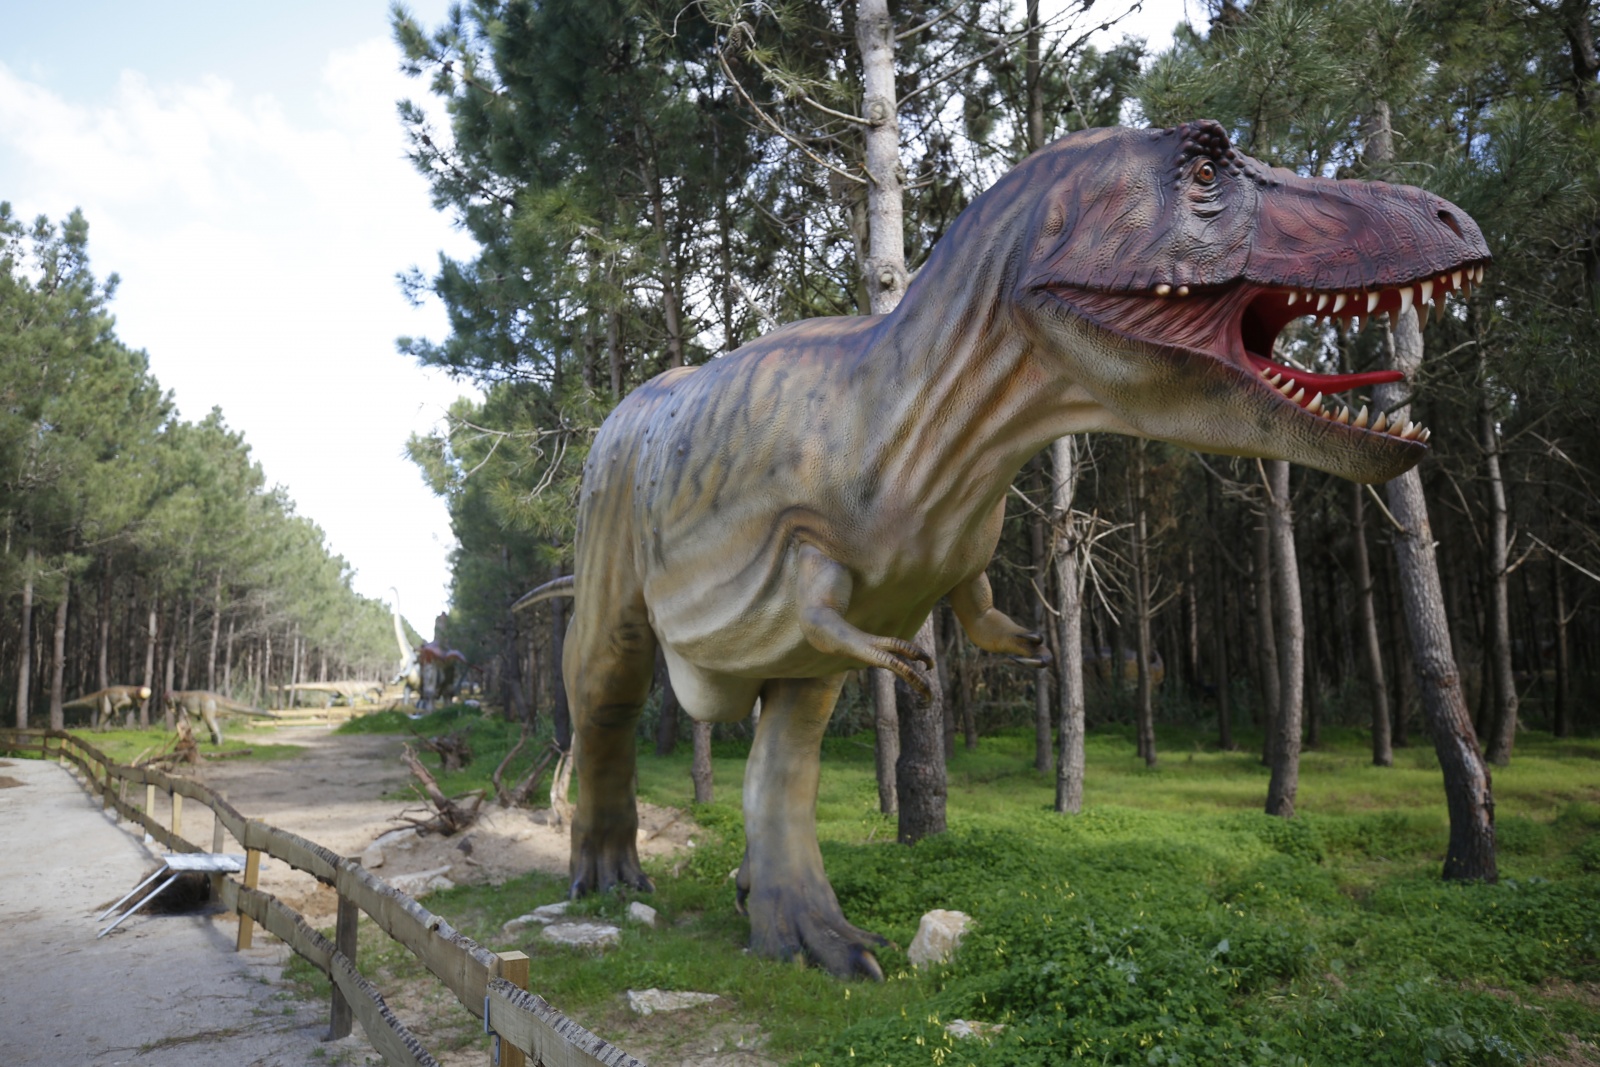 Convite A festa de aniversário T-Rex Dino da escavação do